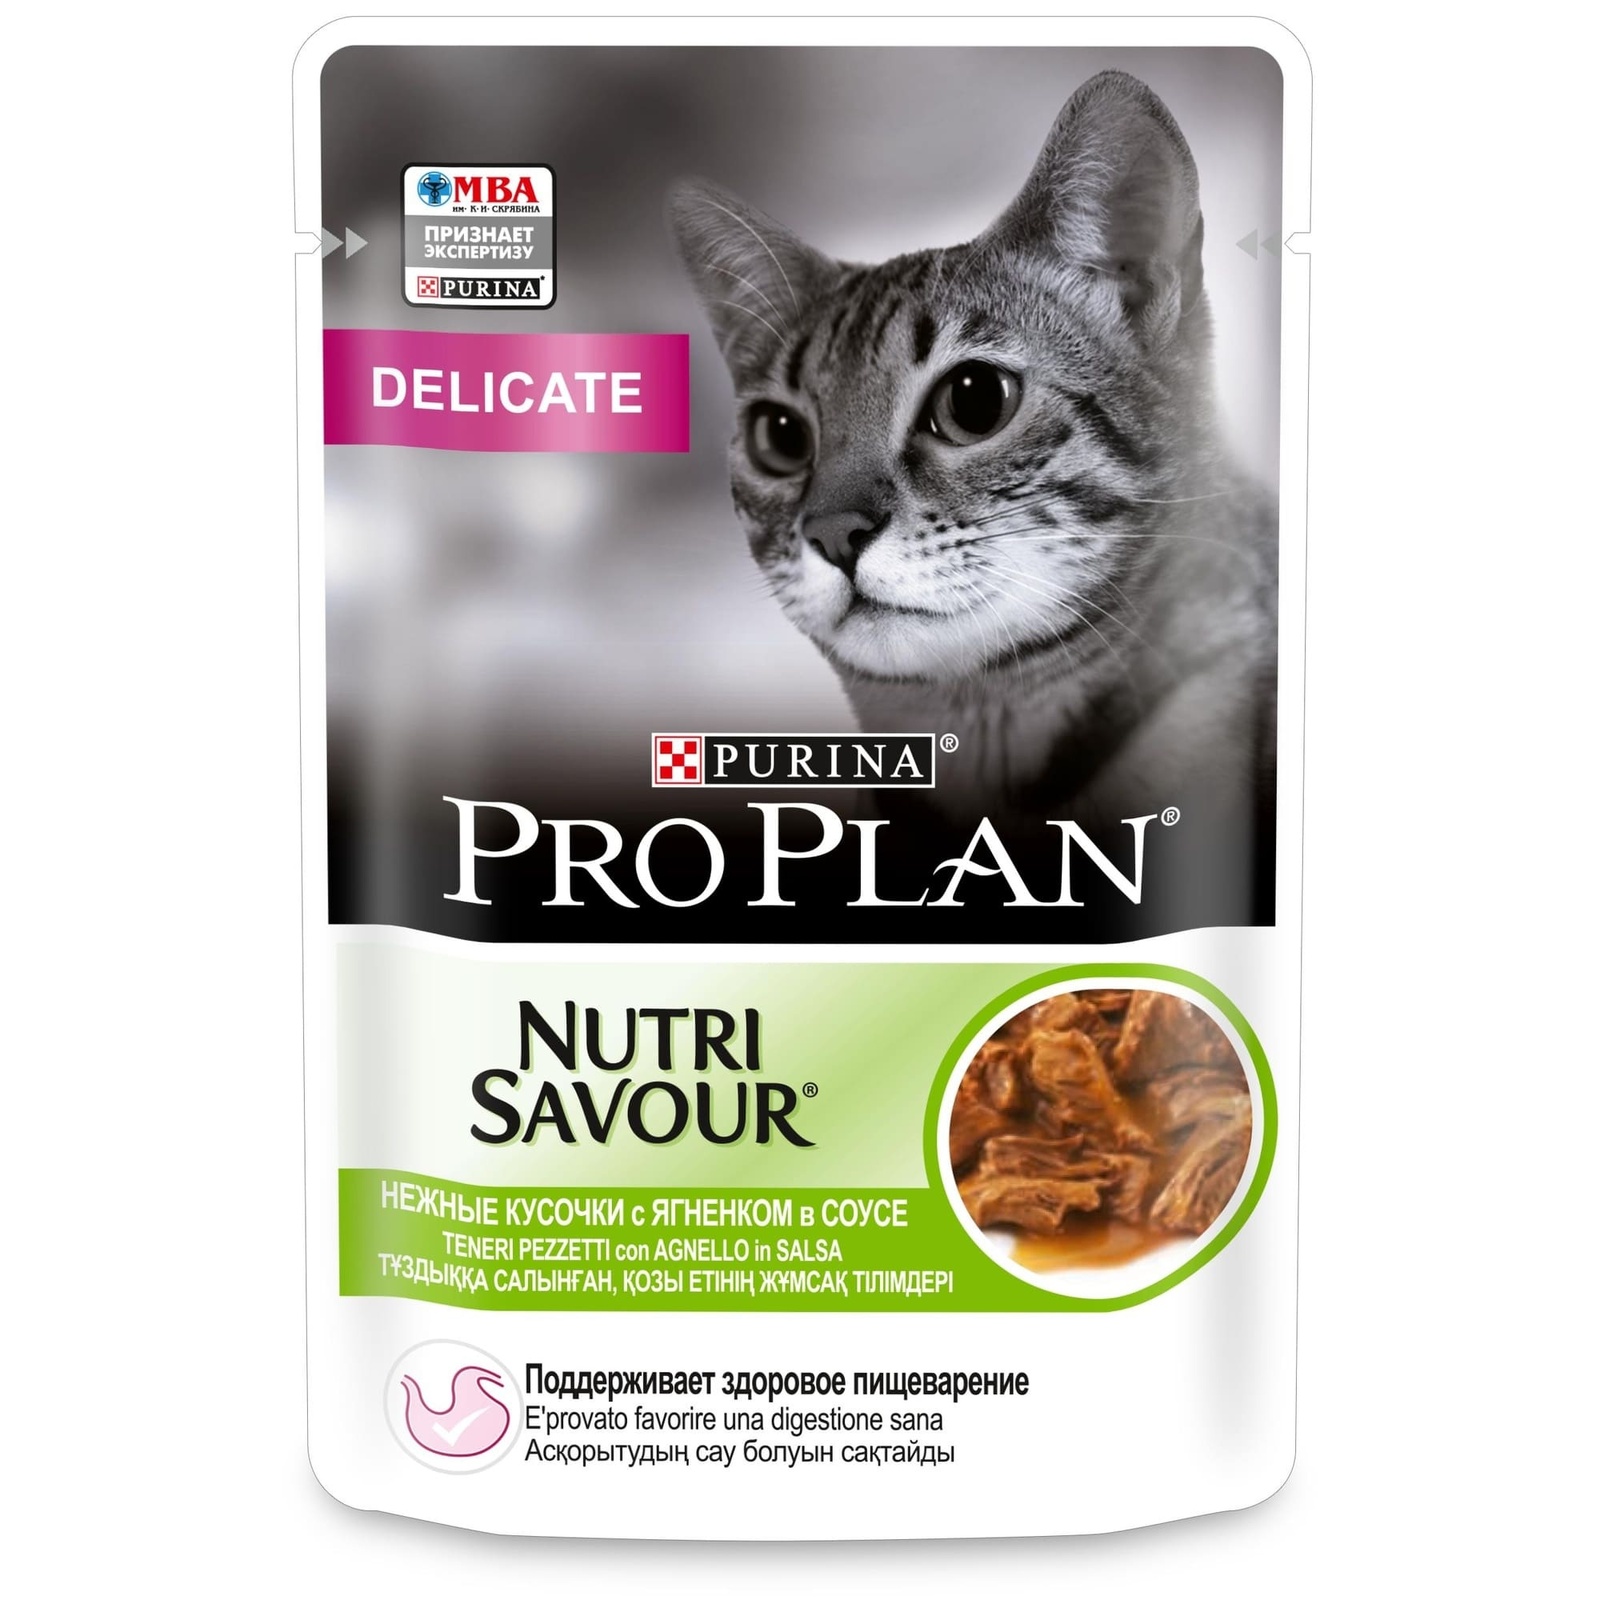 PRO PLAN (консервы) влажный корм Nutri Savour для взрослых кошек с чувствительным пищеварением или с особыми предпочтениями в еде, с ягненком в соусе (1 шт) от Petshop